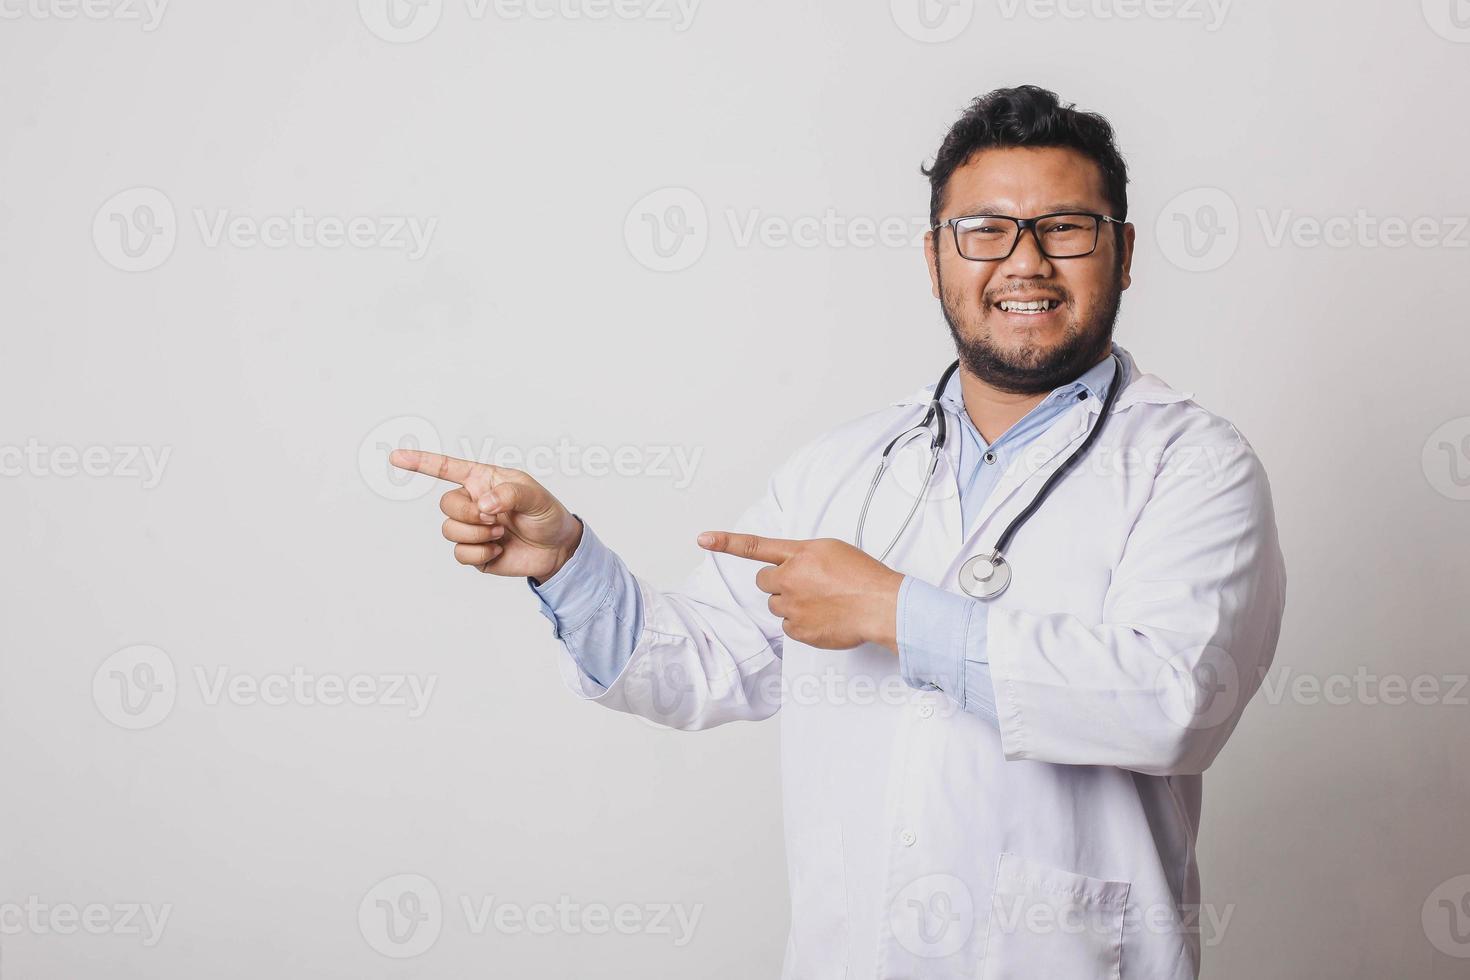 vrolijke mannelijke arts met zijwaarts wijzend gebaar op kopieerruimte geïsoleerd op een witte achtergrond foto